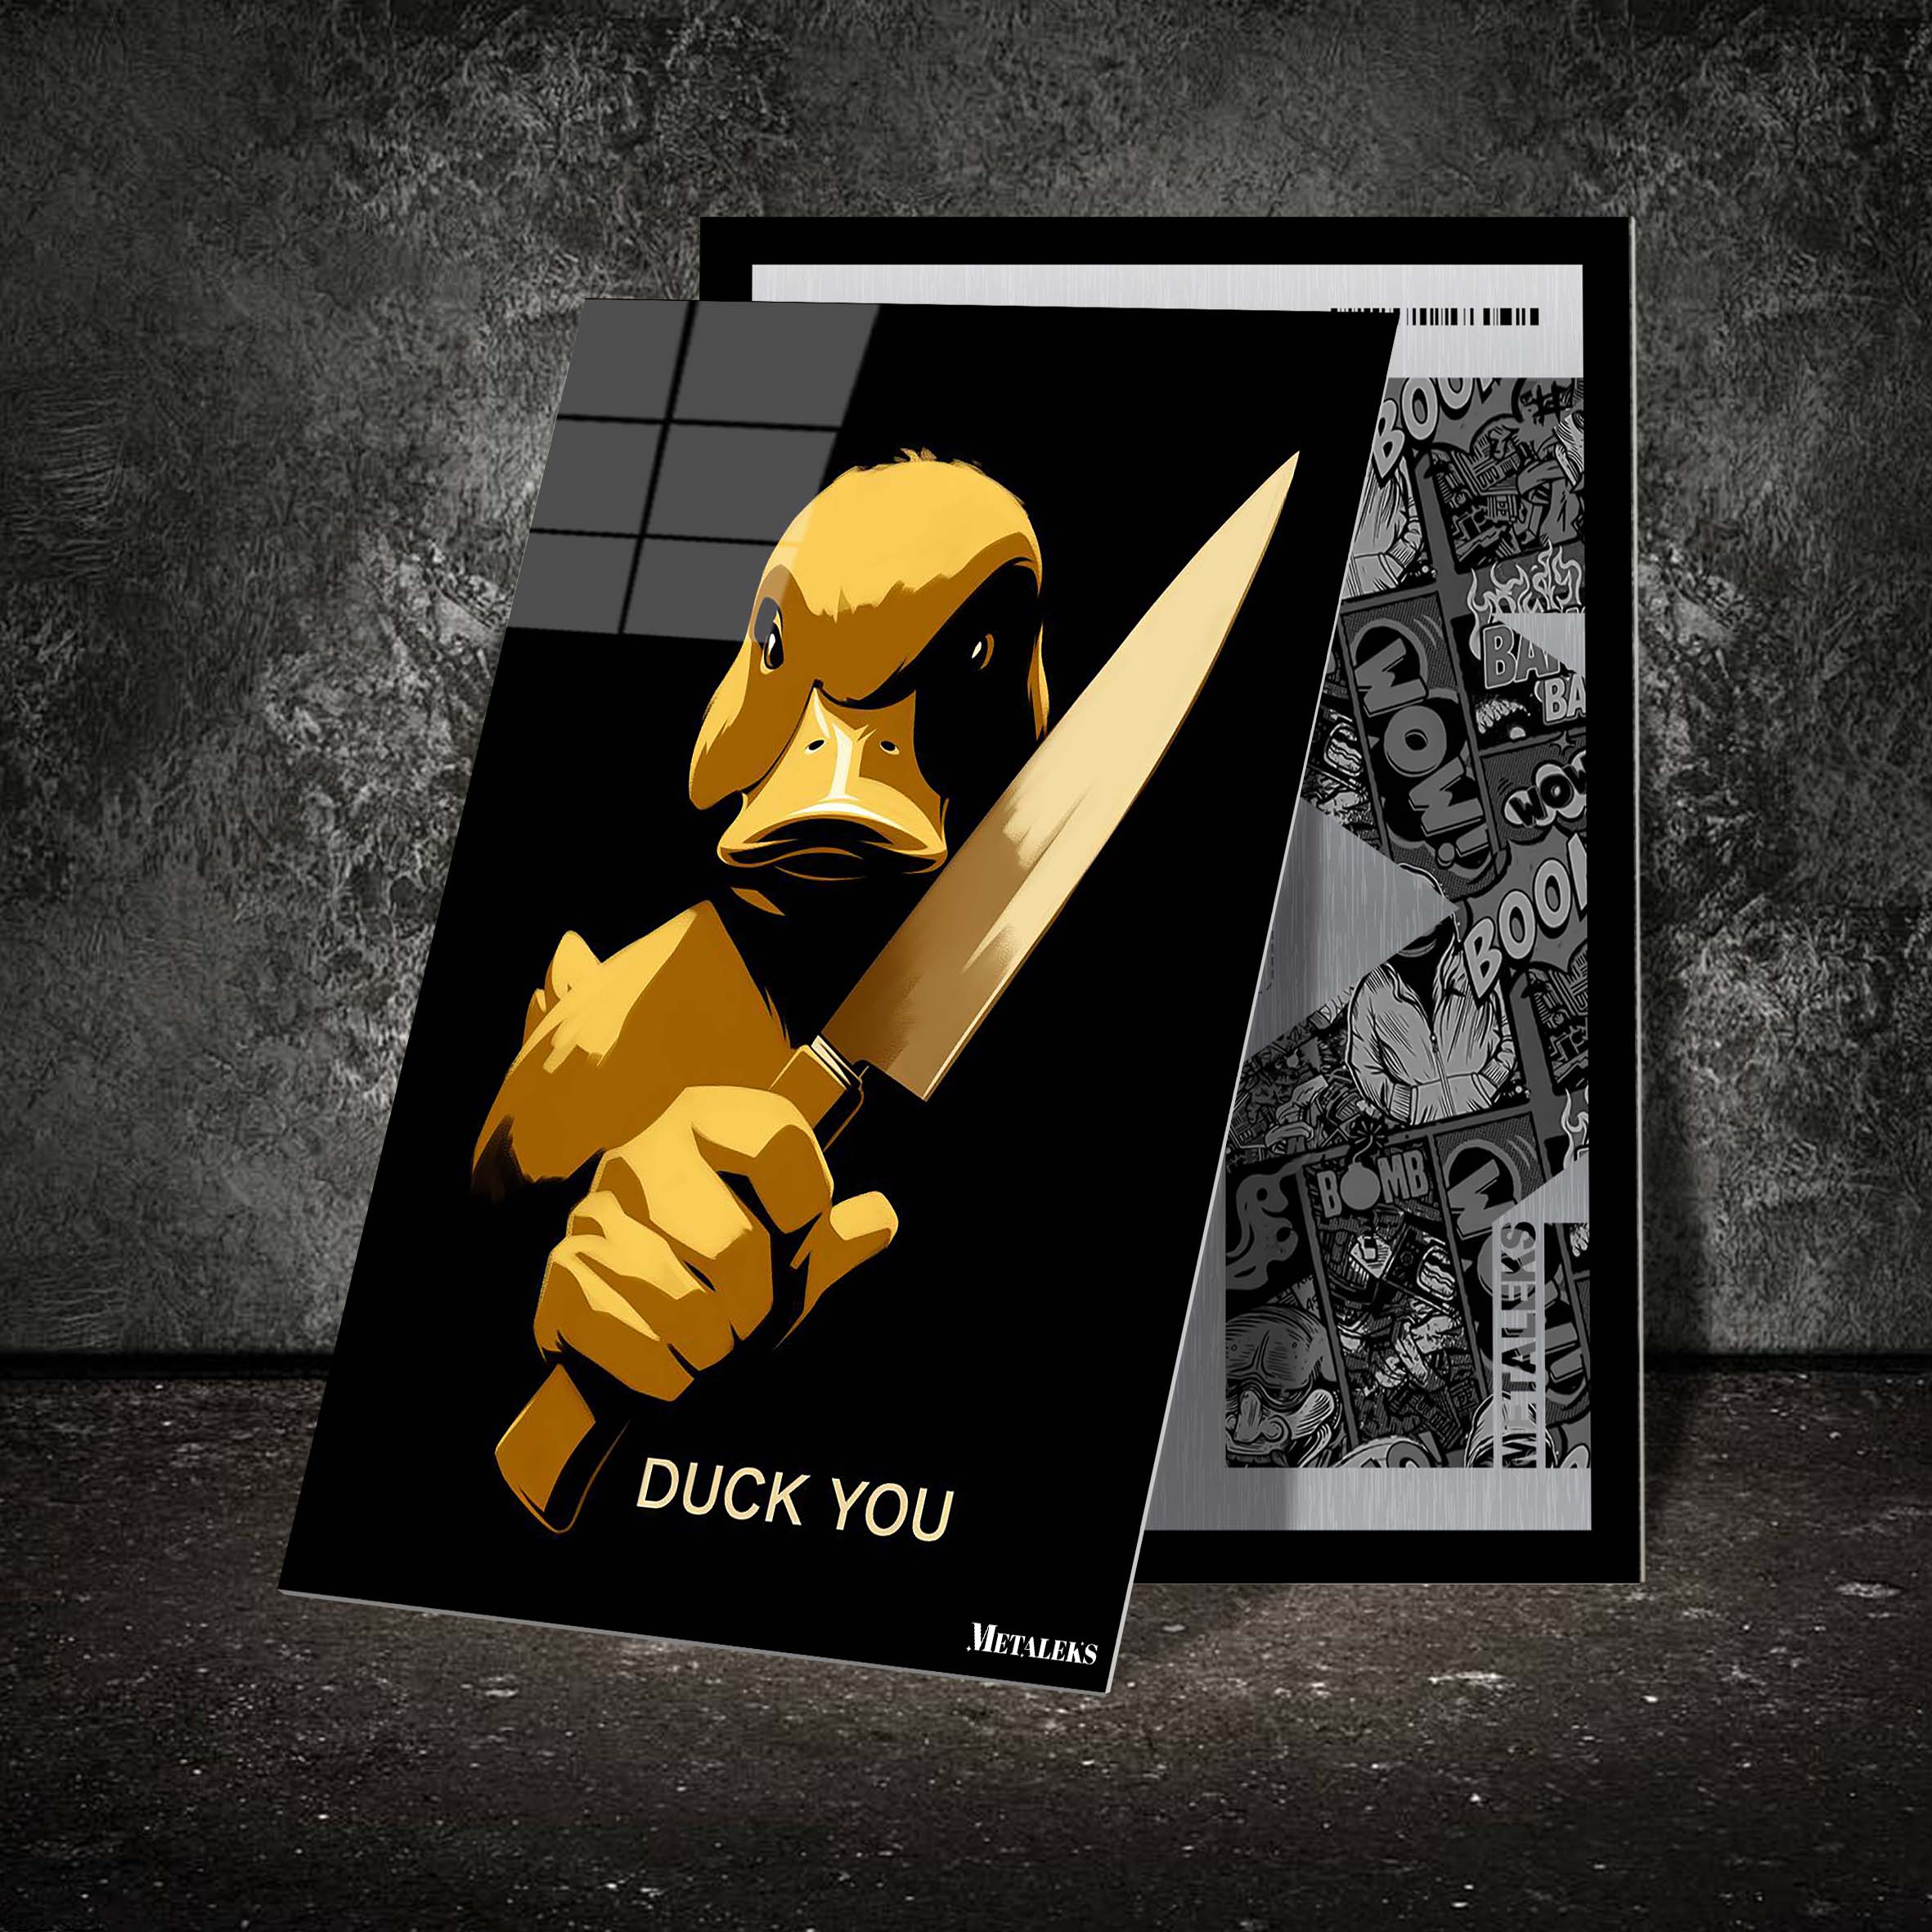 Serial Duckiller-designed by @Vizio